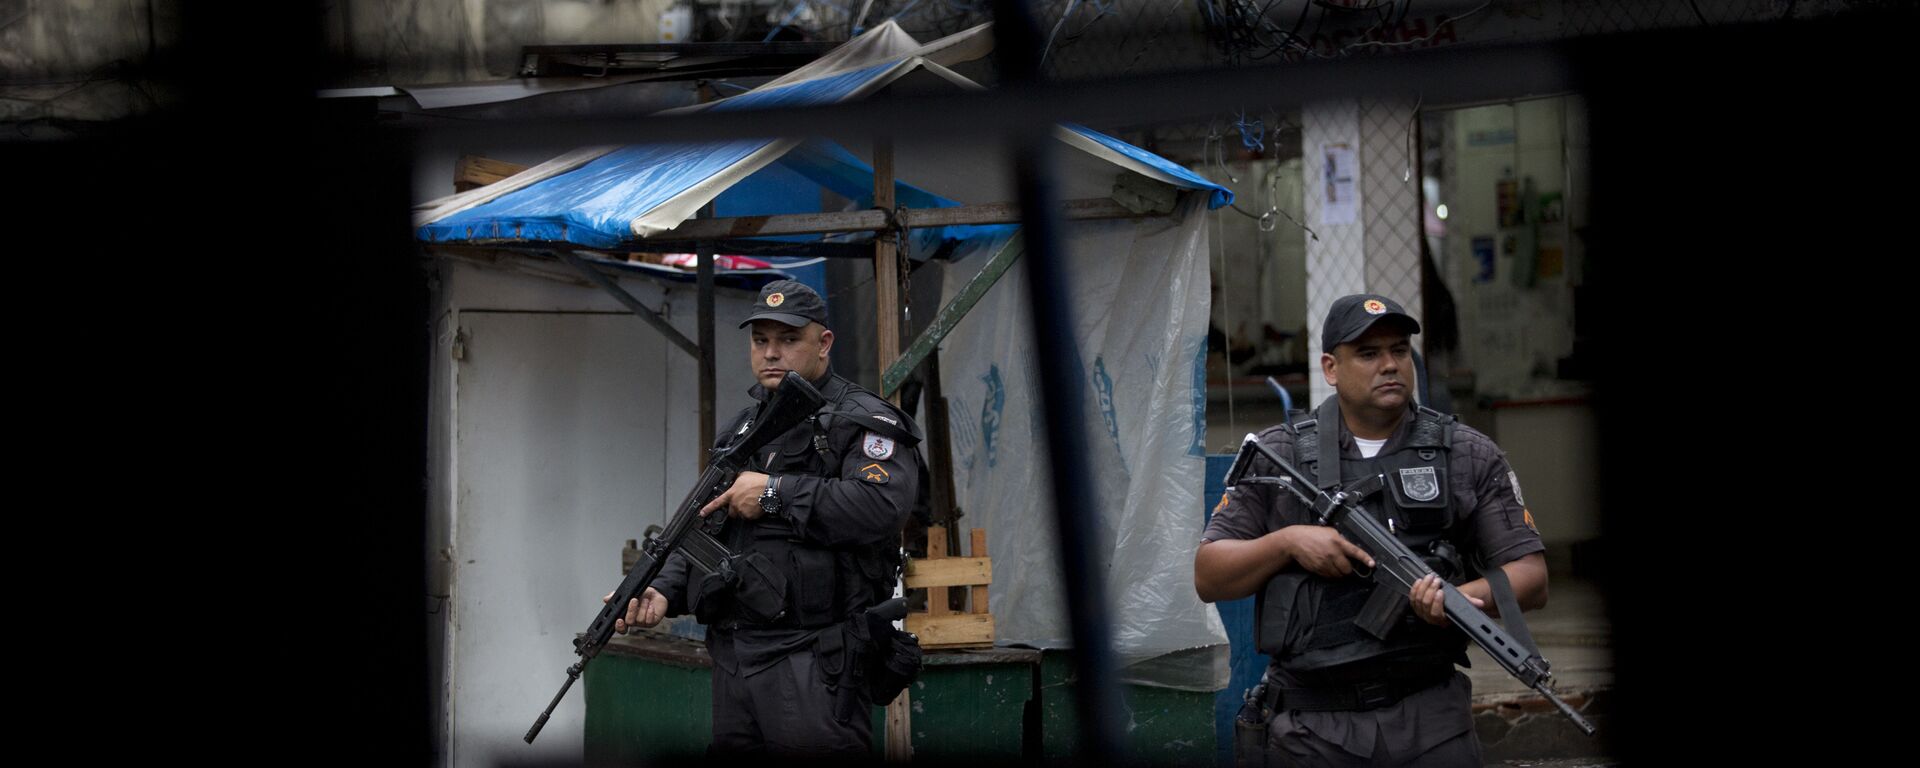 Policía militar brasileña en la favela Rocinha de Río de Janeiro - Sputnik Mundo, 1920, 18.06.2021